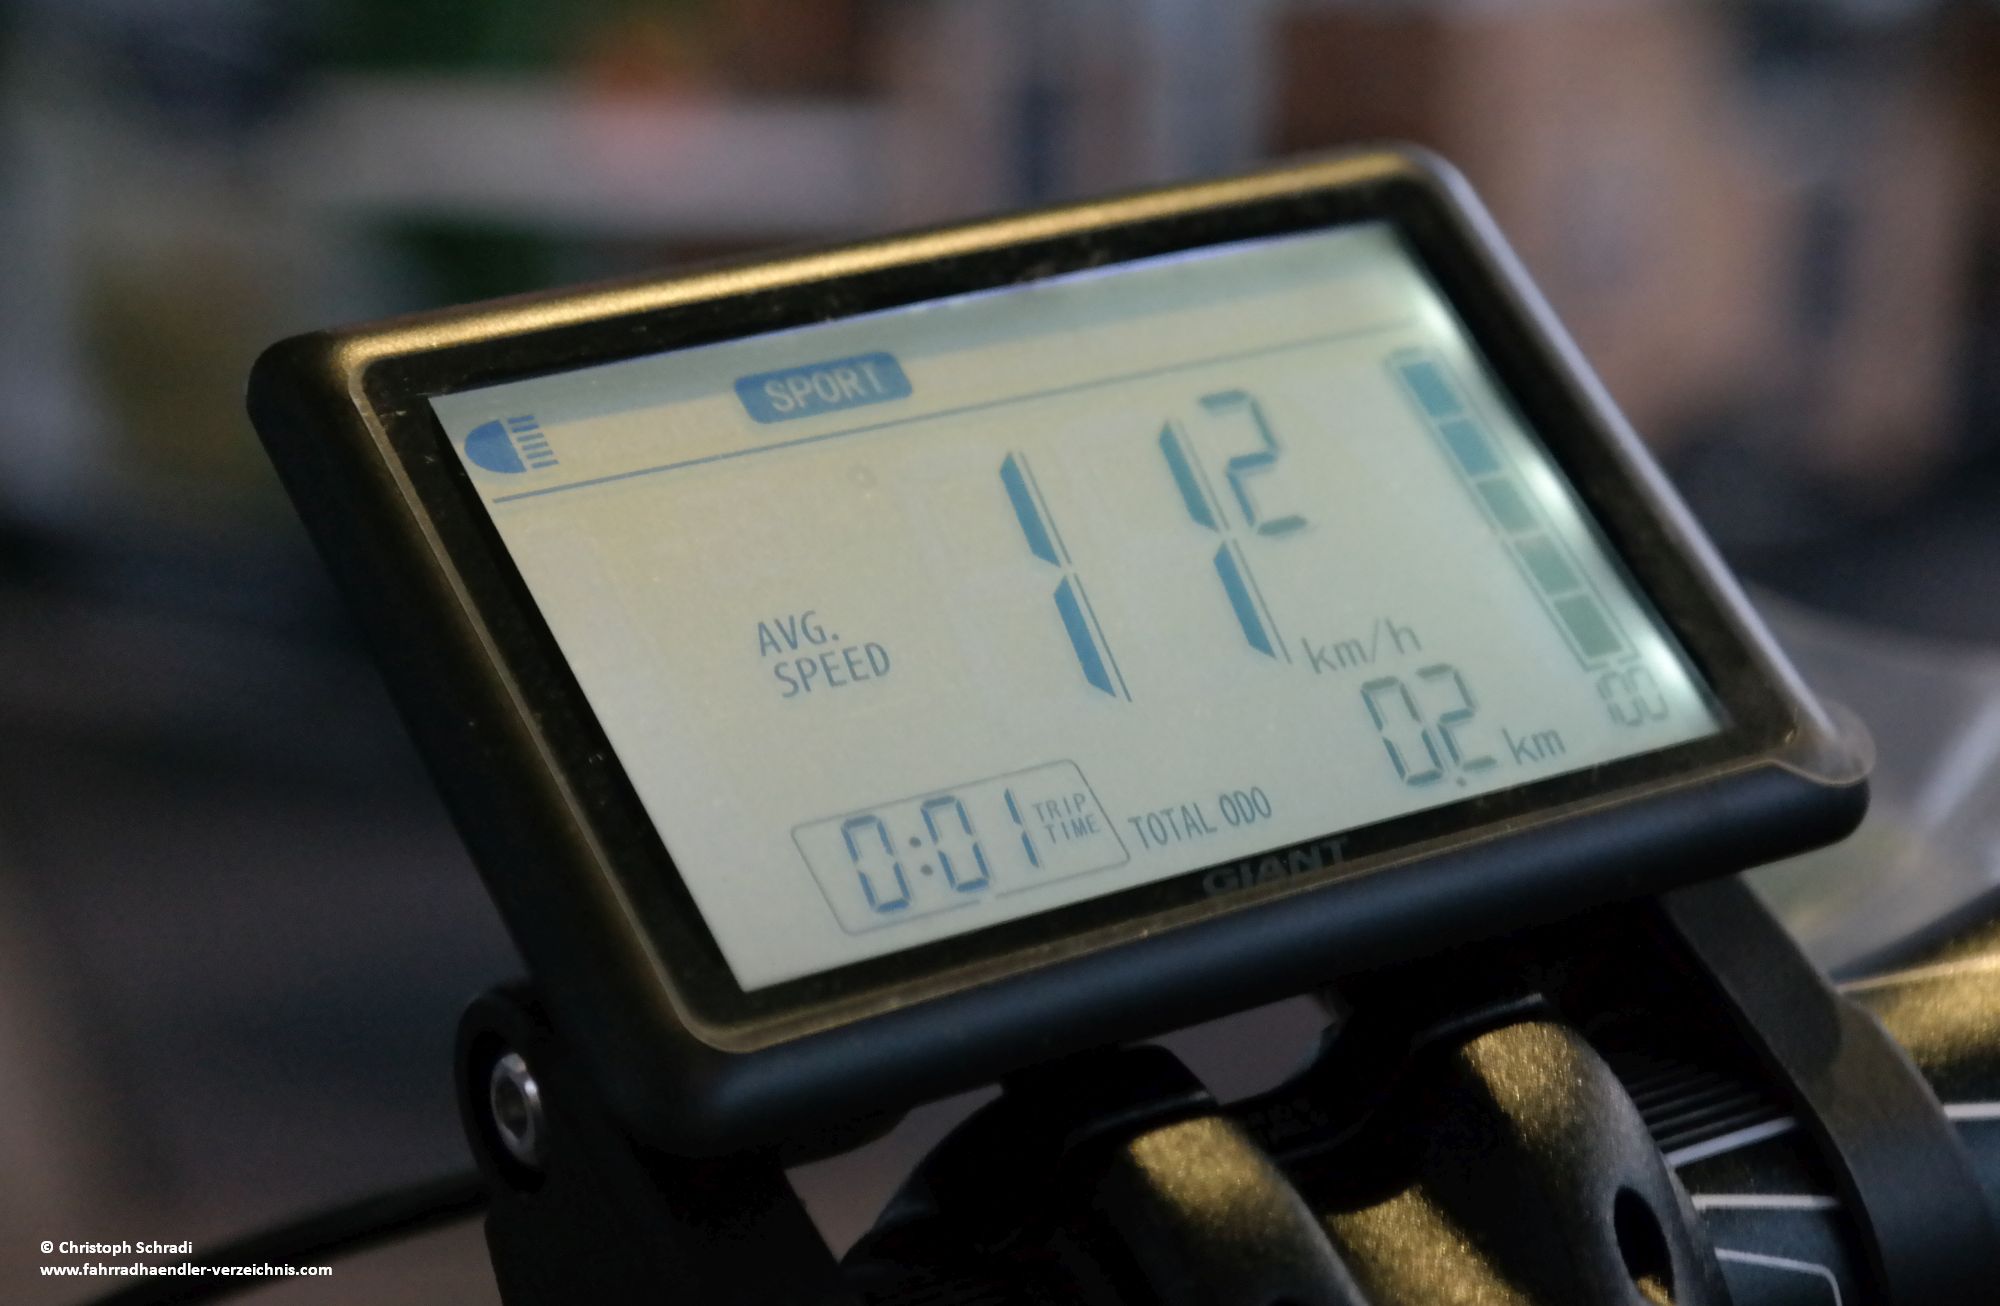 Die Ridecontrol "Charge" Bedieneinheit - Display von Giant bietet eine in schwarz weiß gehaltene Anzeige der wichtigsten Fahrdaten am E-Bike von Giant Syncdrive Antrieben